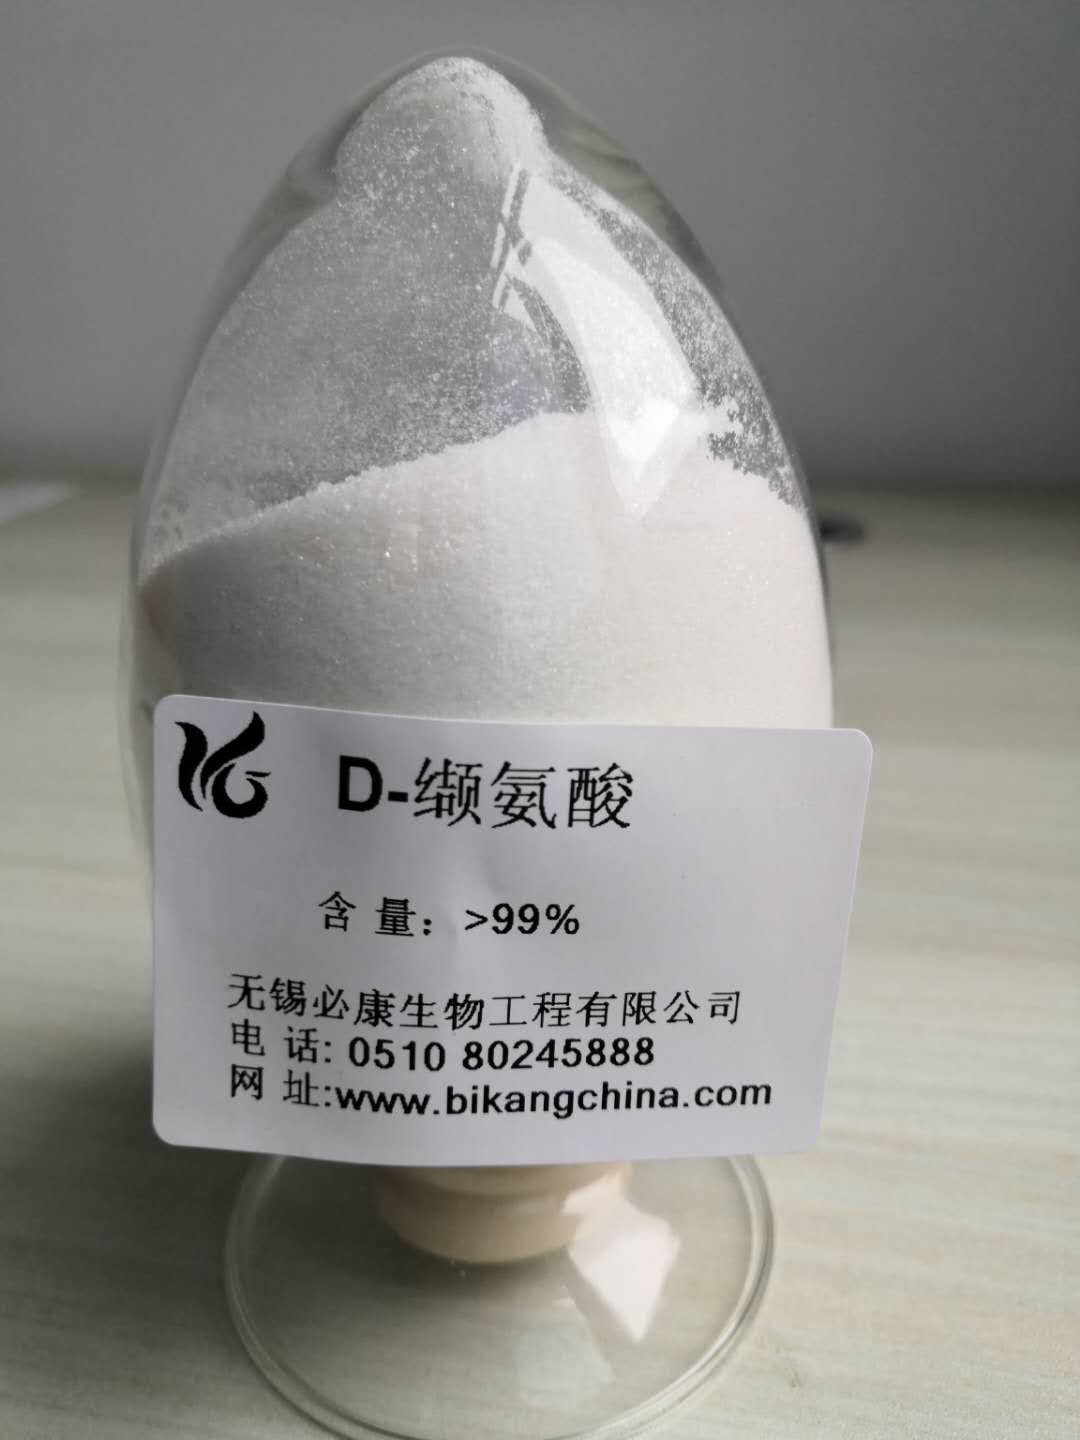 D-缬氨酸 产品图片